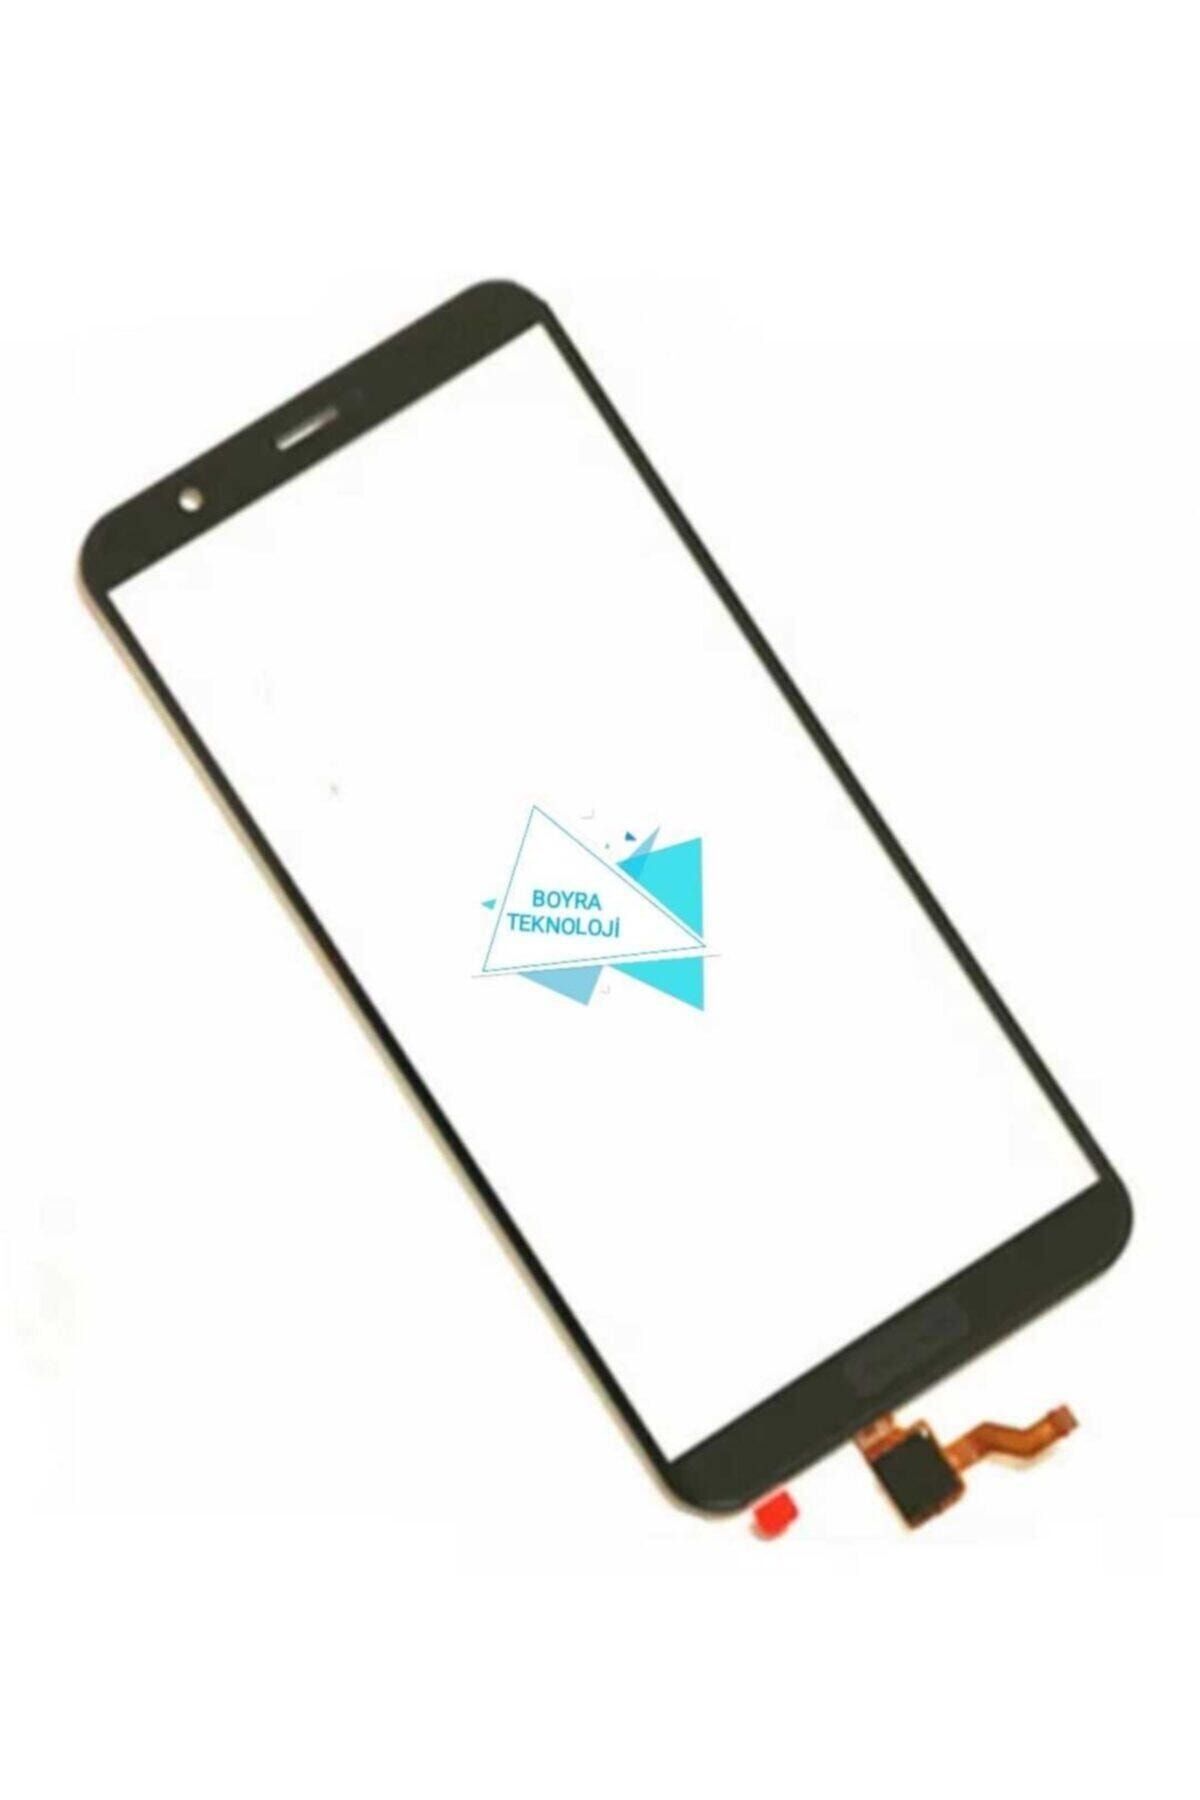 Boyra Teknoloji Huawei P Smart 2018 Uyumlu Okalı Dokunmatik Ön Cam Ekran Değildir Siyah